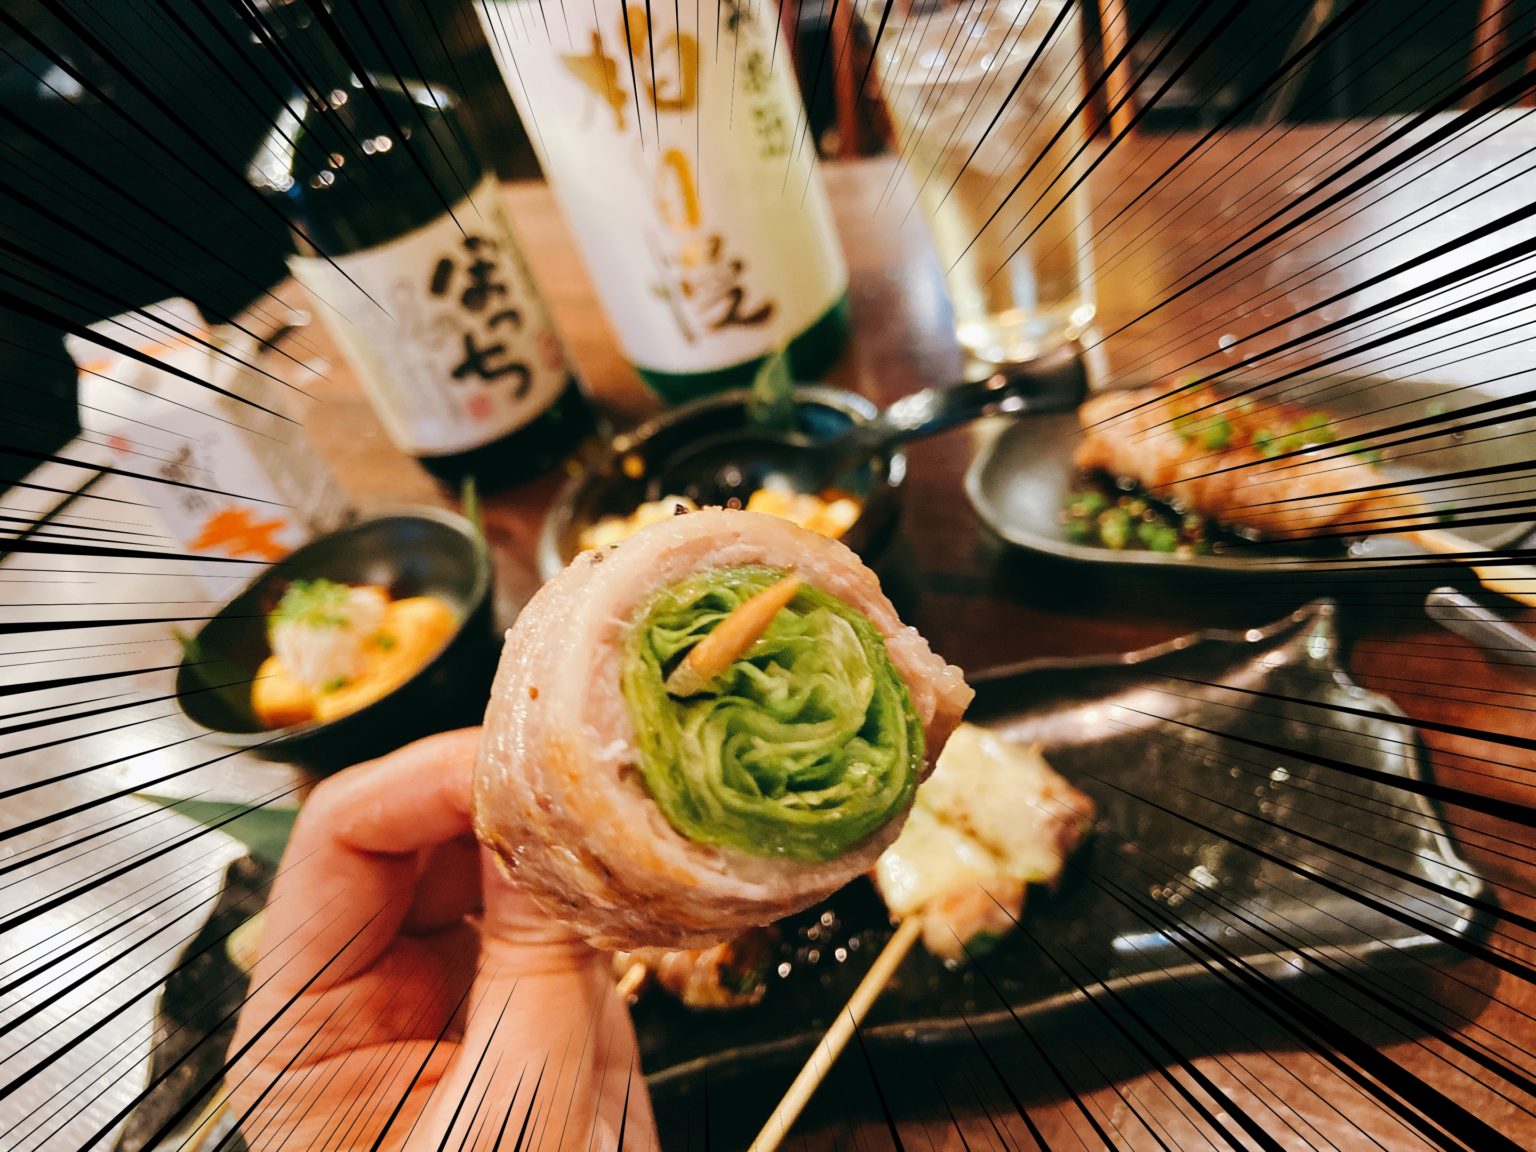 日本一美味しいといわれる山形県産の 米の娘ぶた を使用した野菜巻きが食べられると大人気の 博多居酒屋 Shin 野菜巻き串の巻き は一度食べると野菜巻き串の虜に まじでうまい ロカスポ柏市版